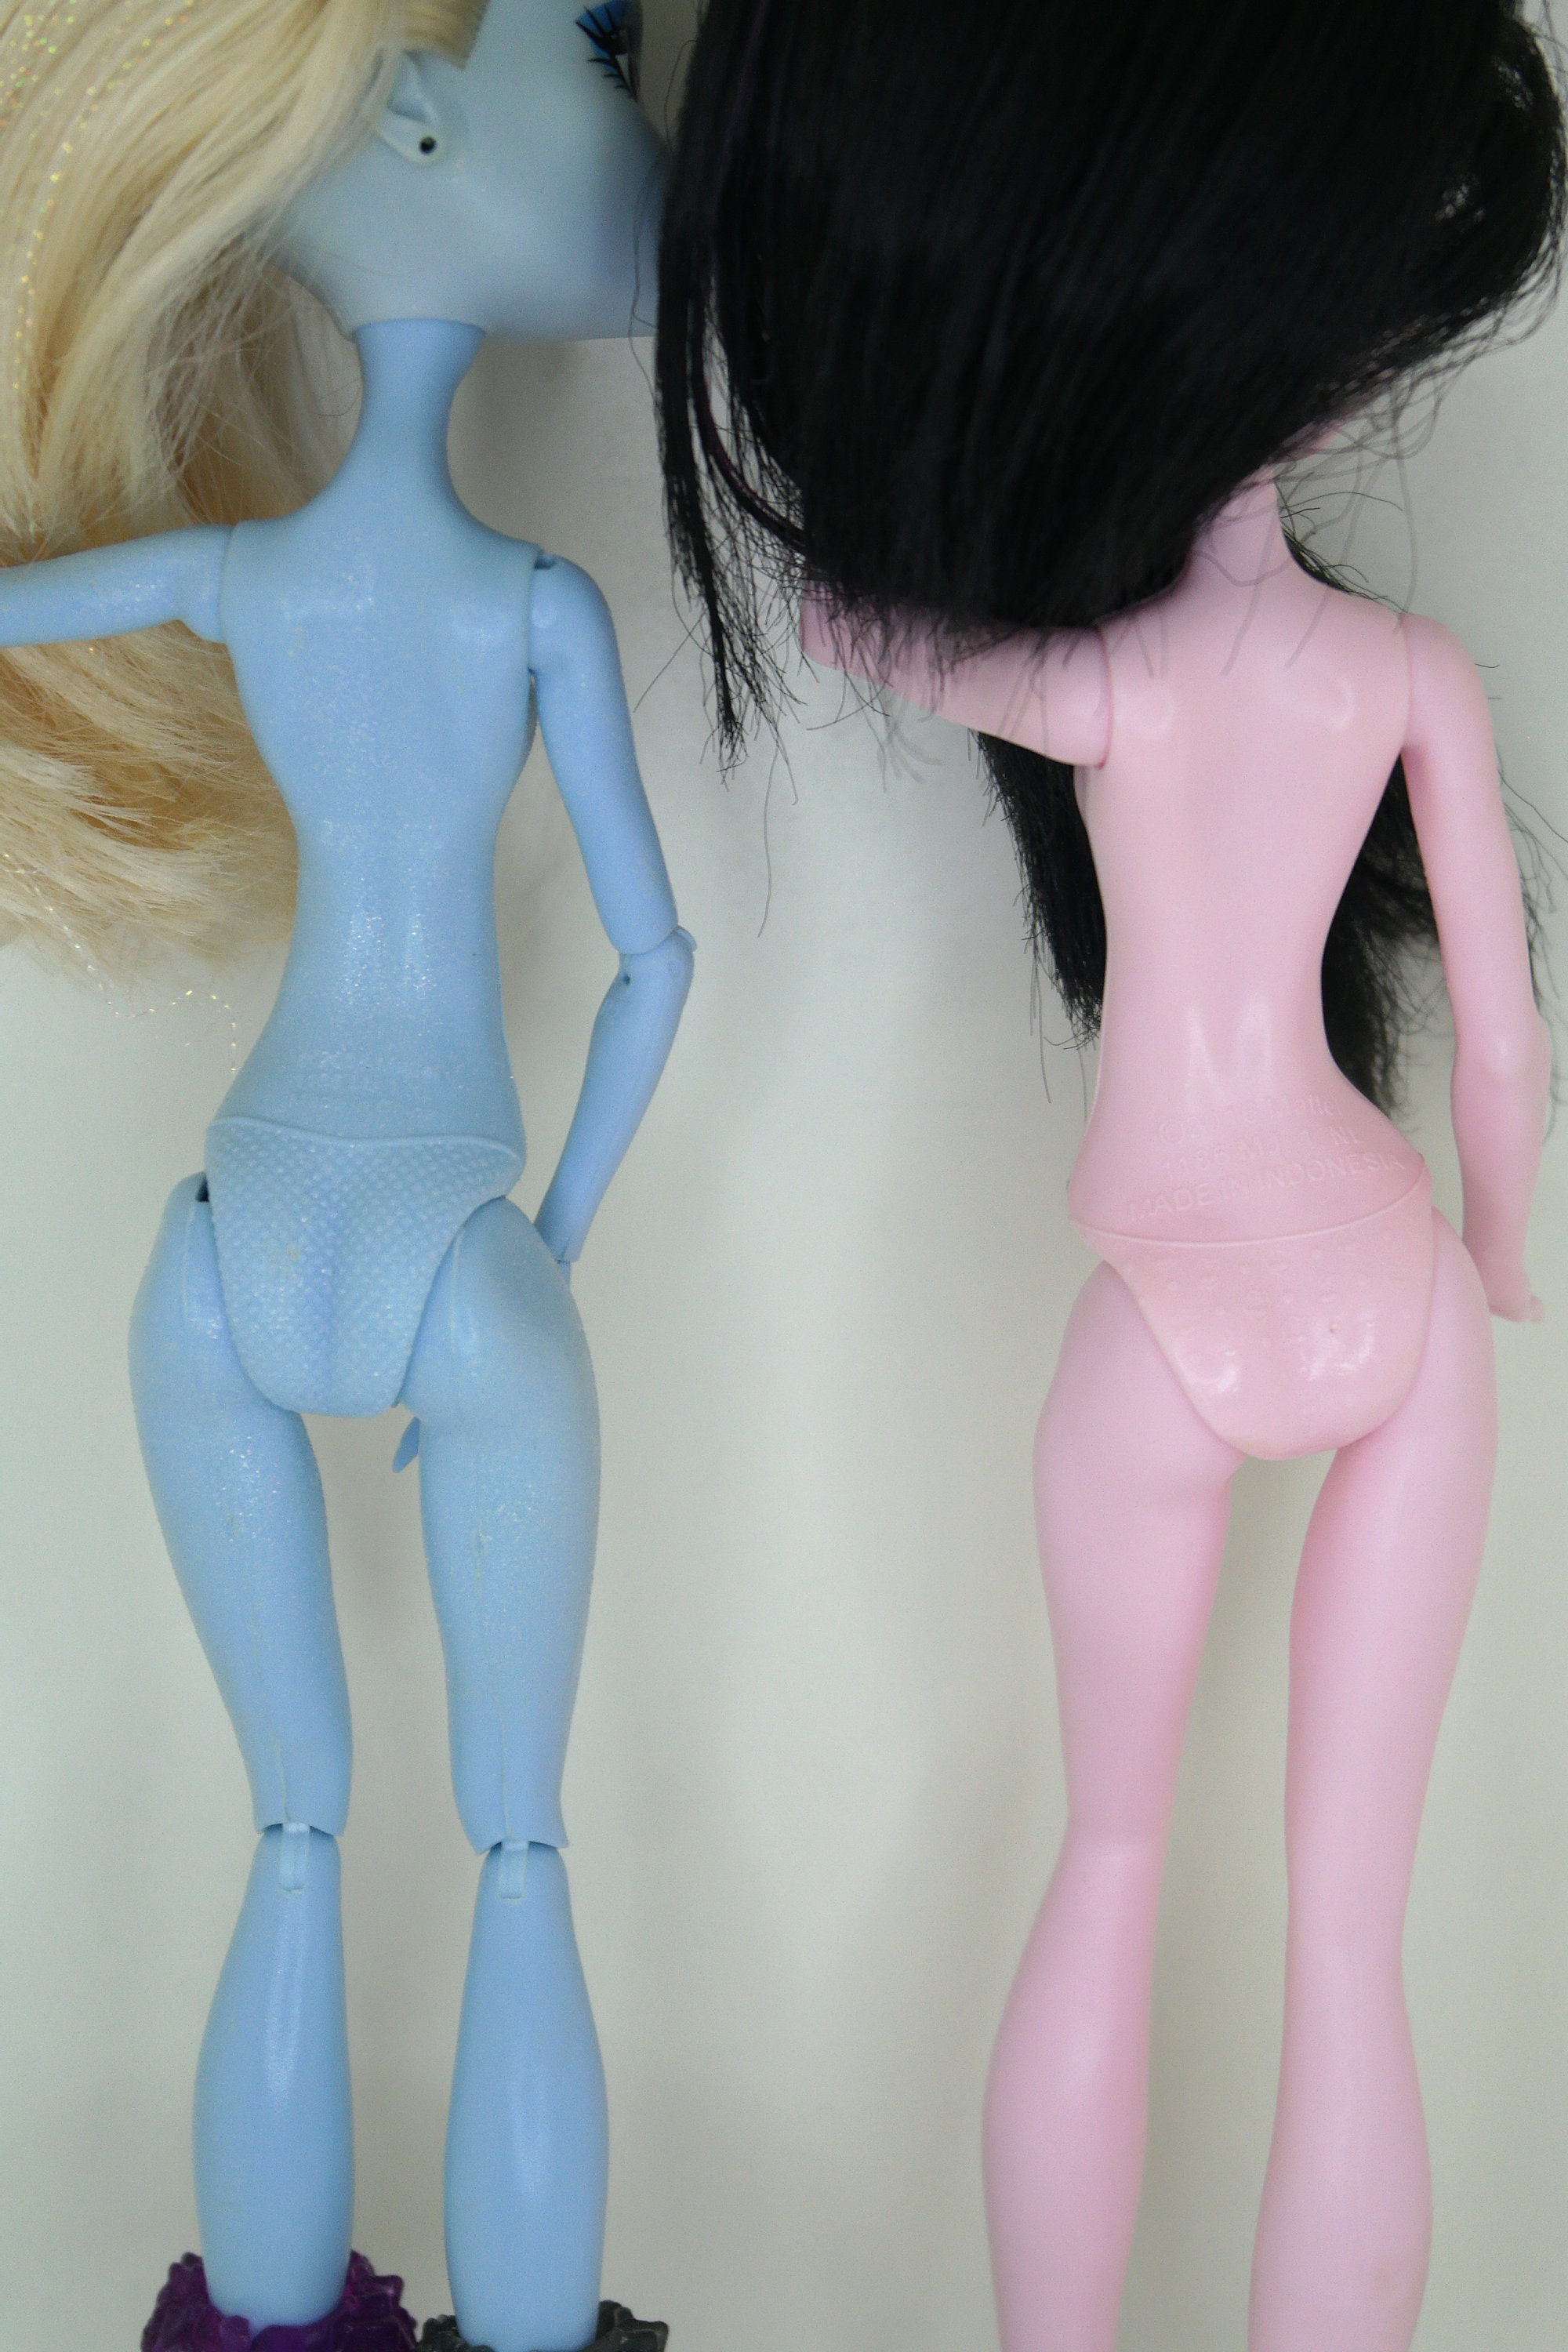 Les poupées Monster High, nouvelle pépite de Mattel